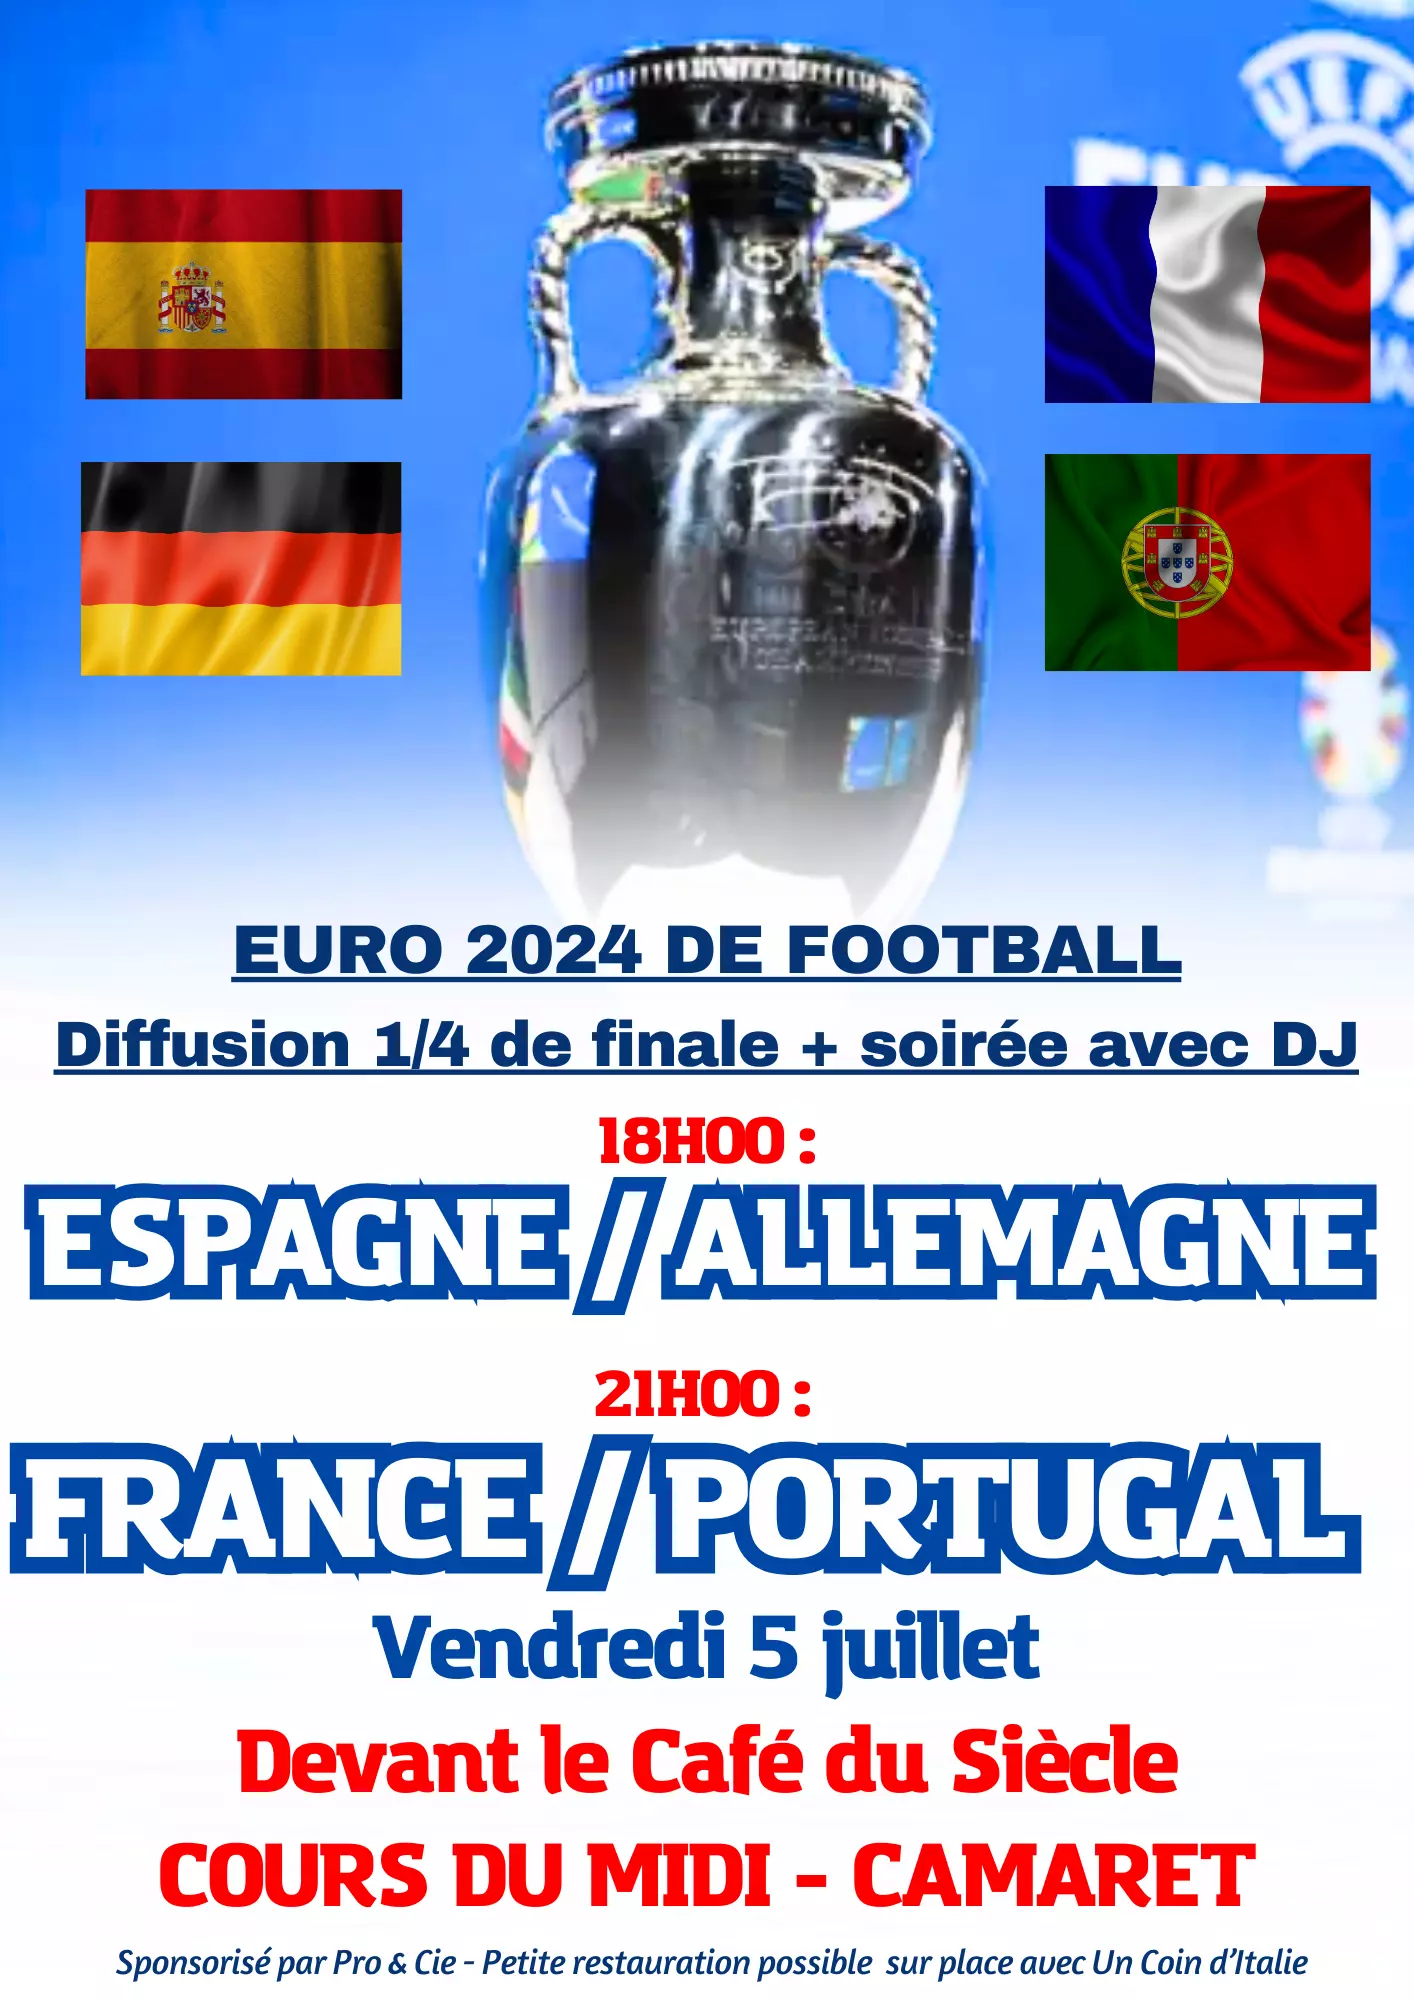 UEFA EURO 2024 de football : diffusion du match Espagne / Allemagne à 18h00 puis du match France / Portugal à 21h00 le vendredi 5 juillet 2024 devant le Café du Siècle sur le cours du Midi à Camaret